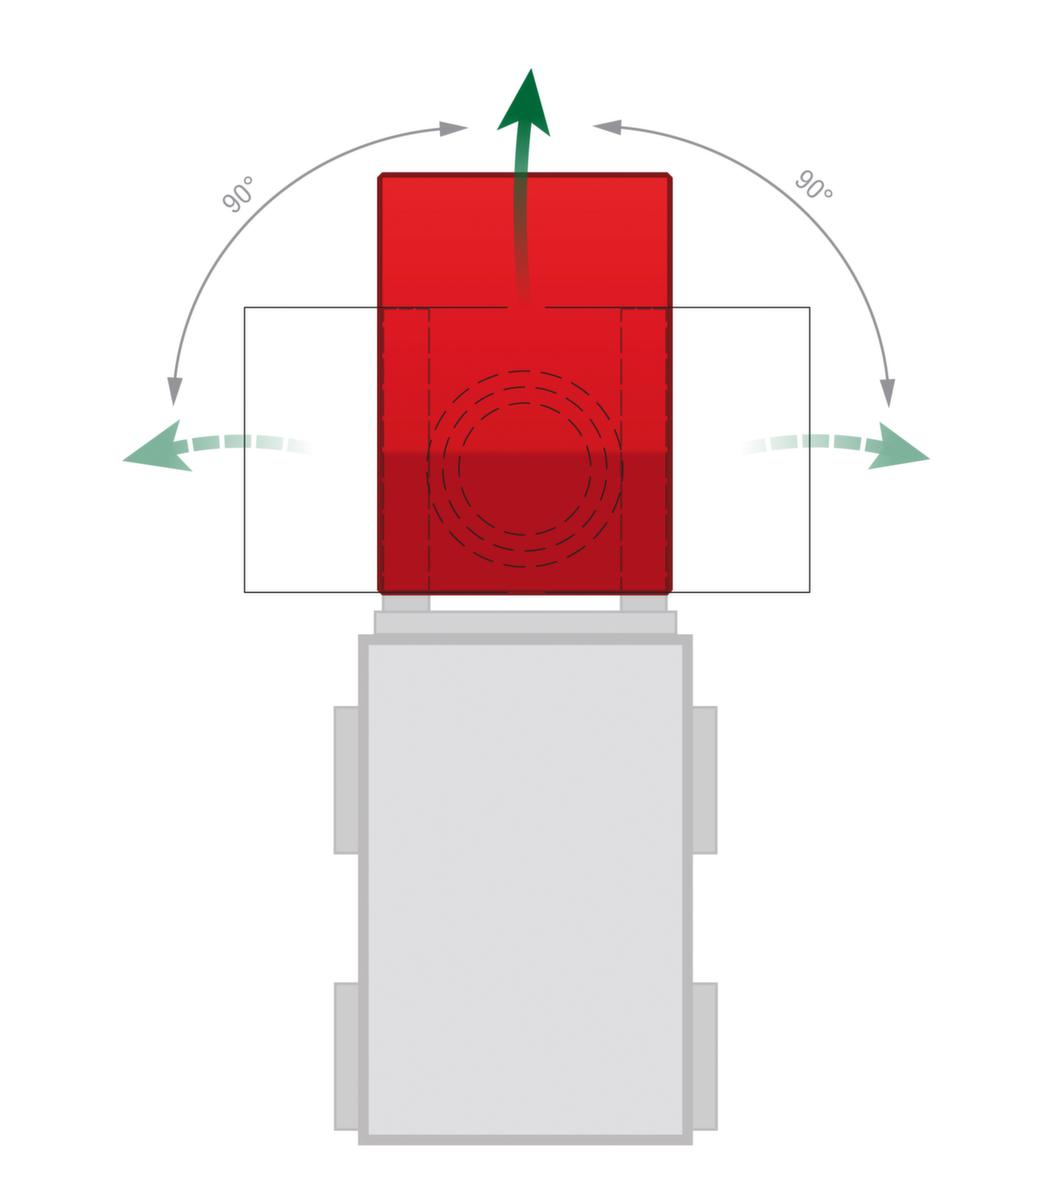 3-Seiten-Späne-Kippbehälter Technische Zeichnung 1 ZOOM